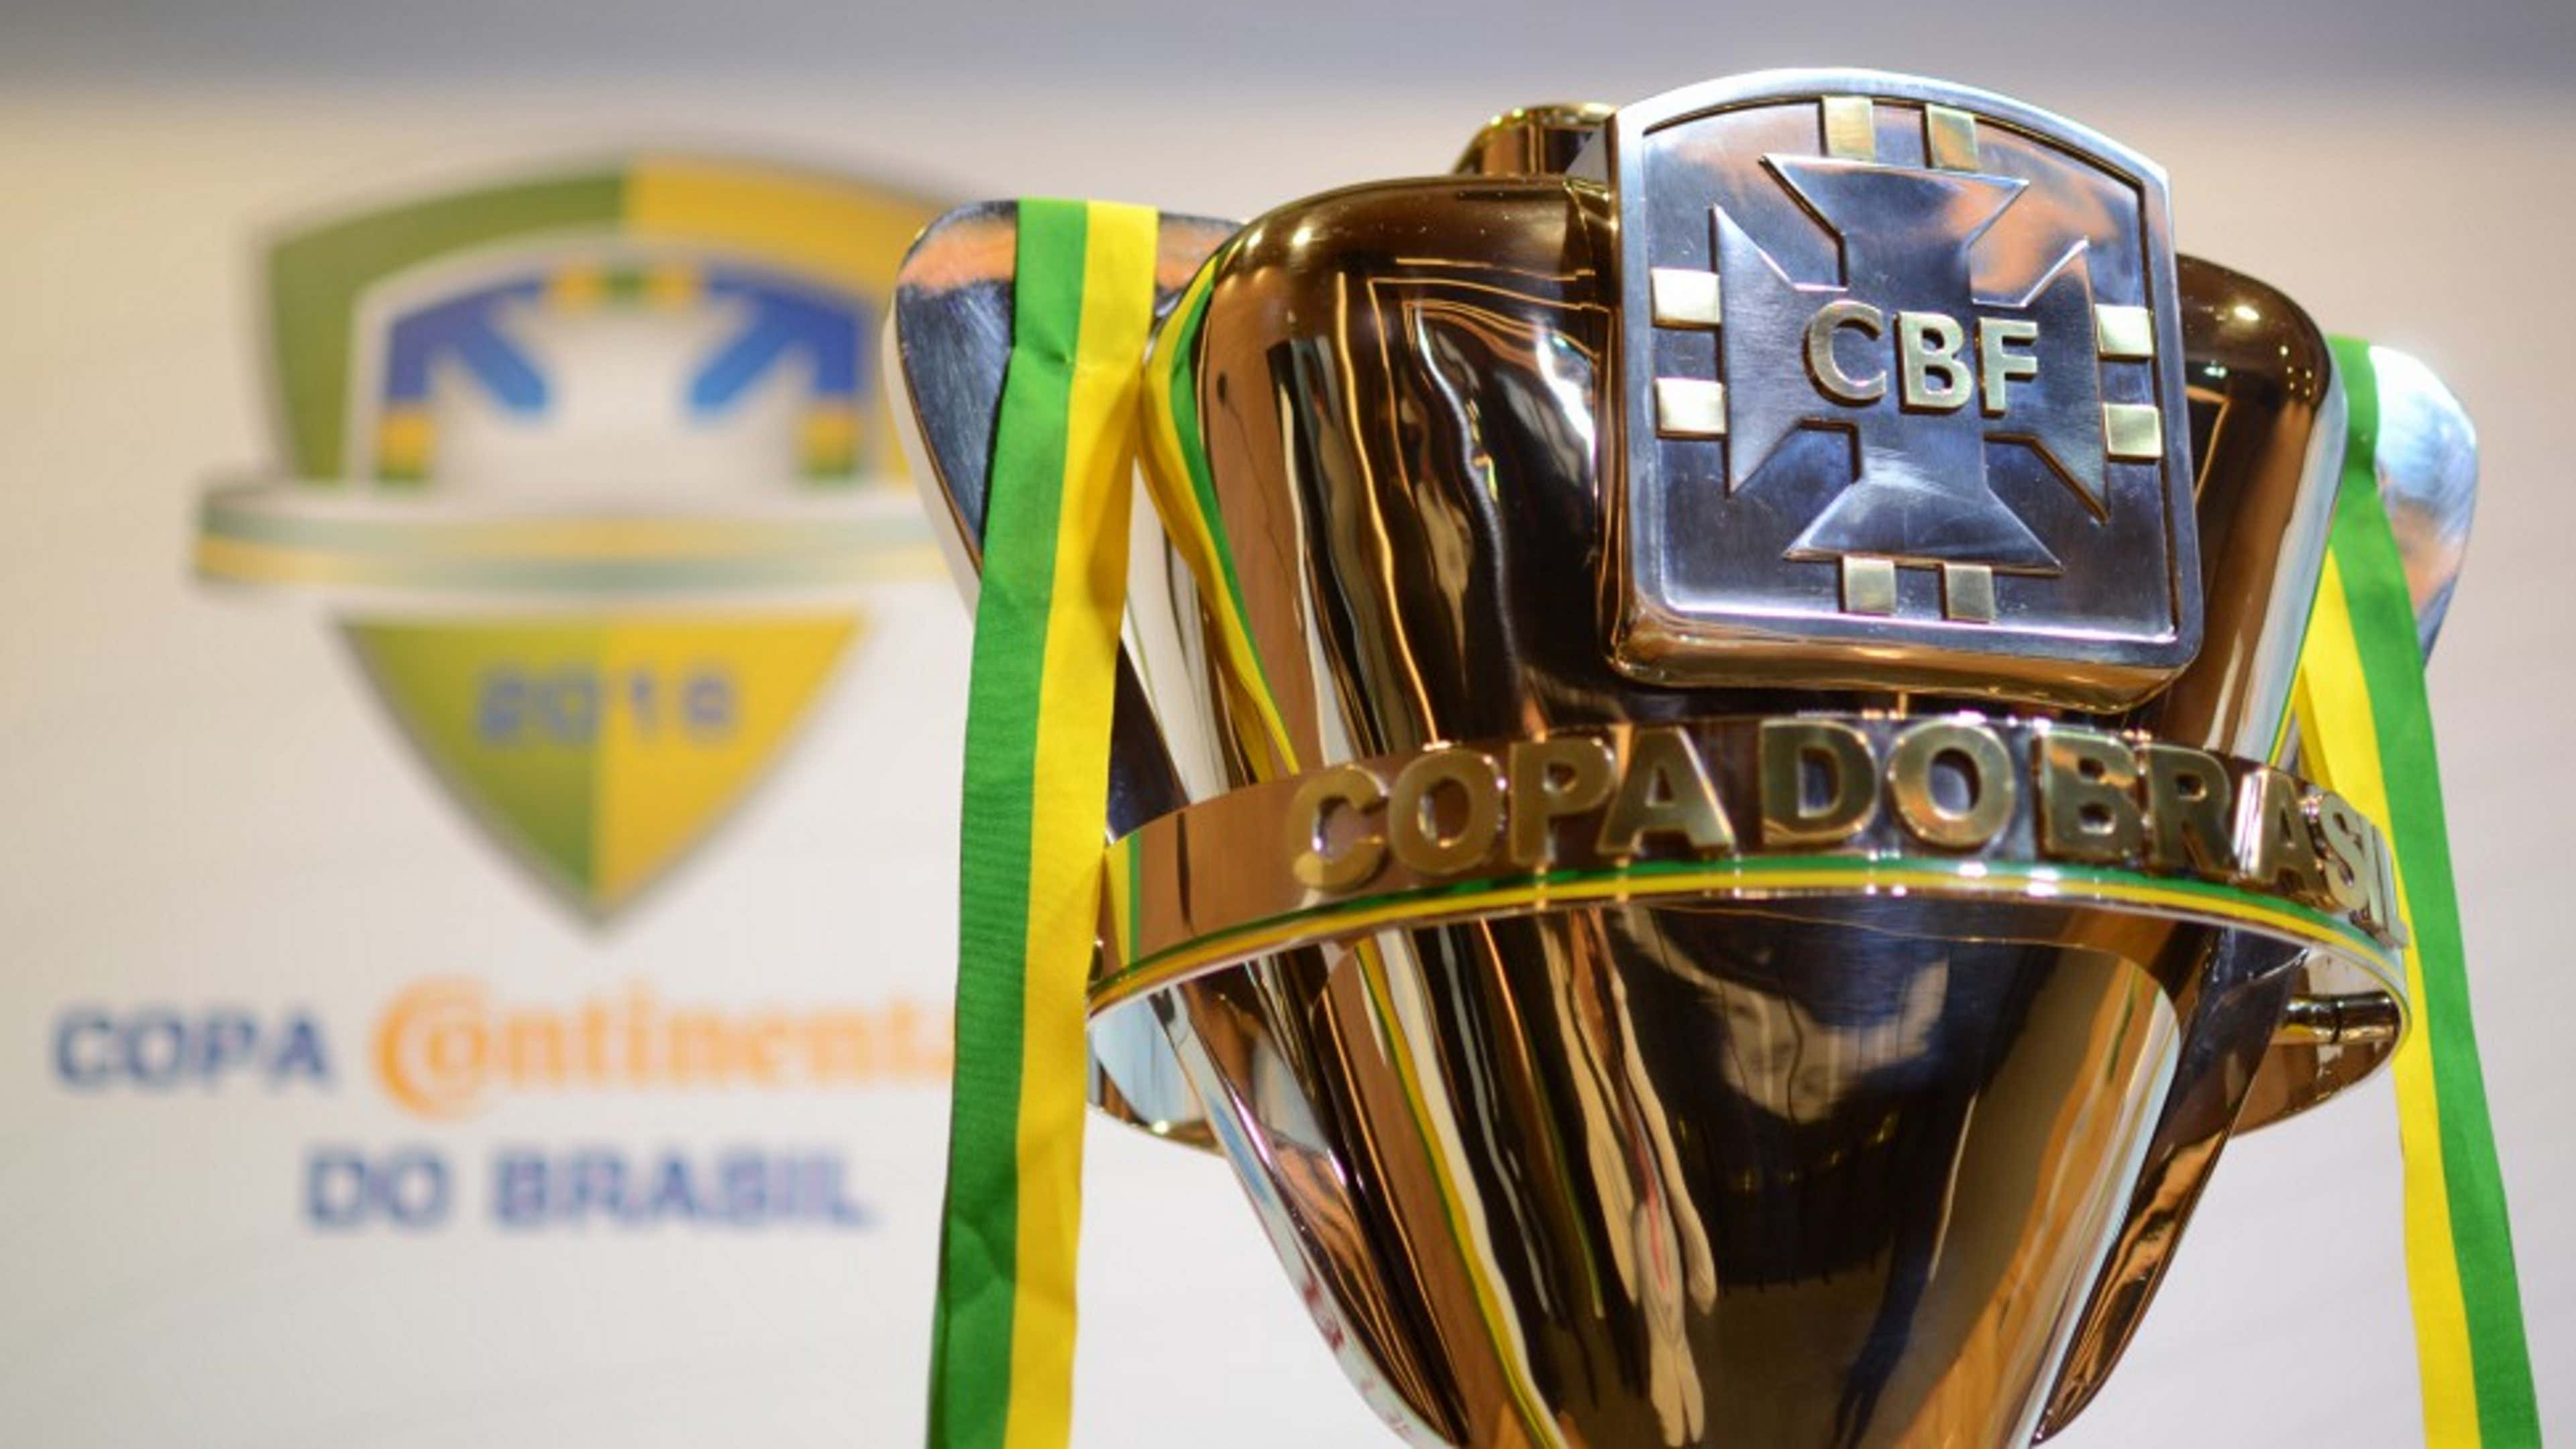 Primeira fase da Copa do Brasil 2023: jogos, quando é, onde, jogo